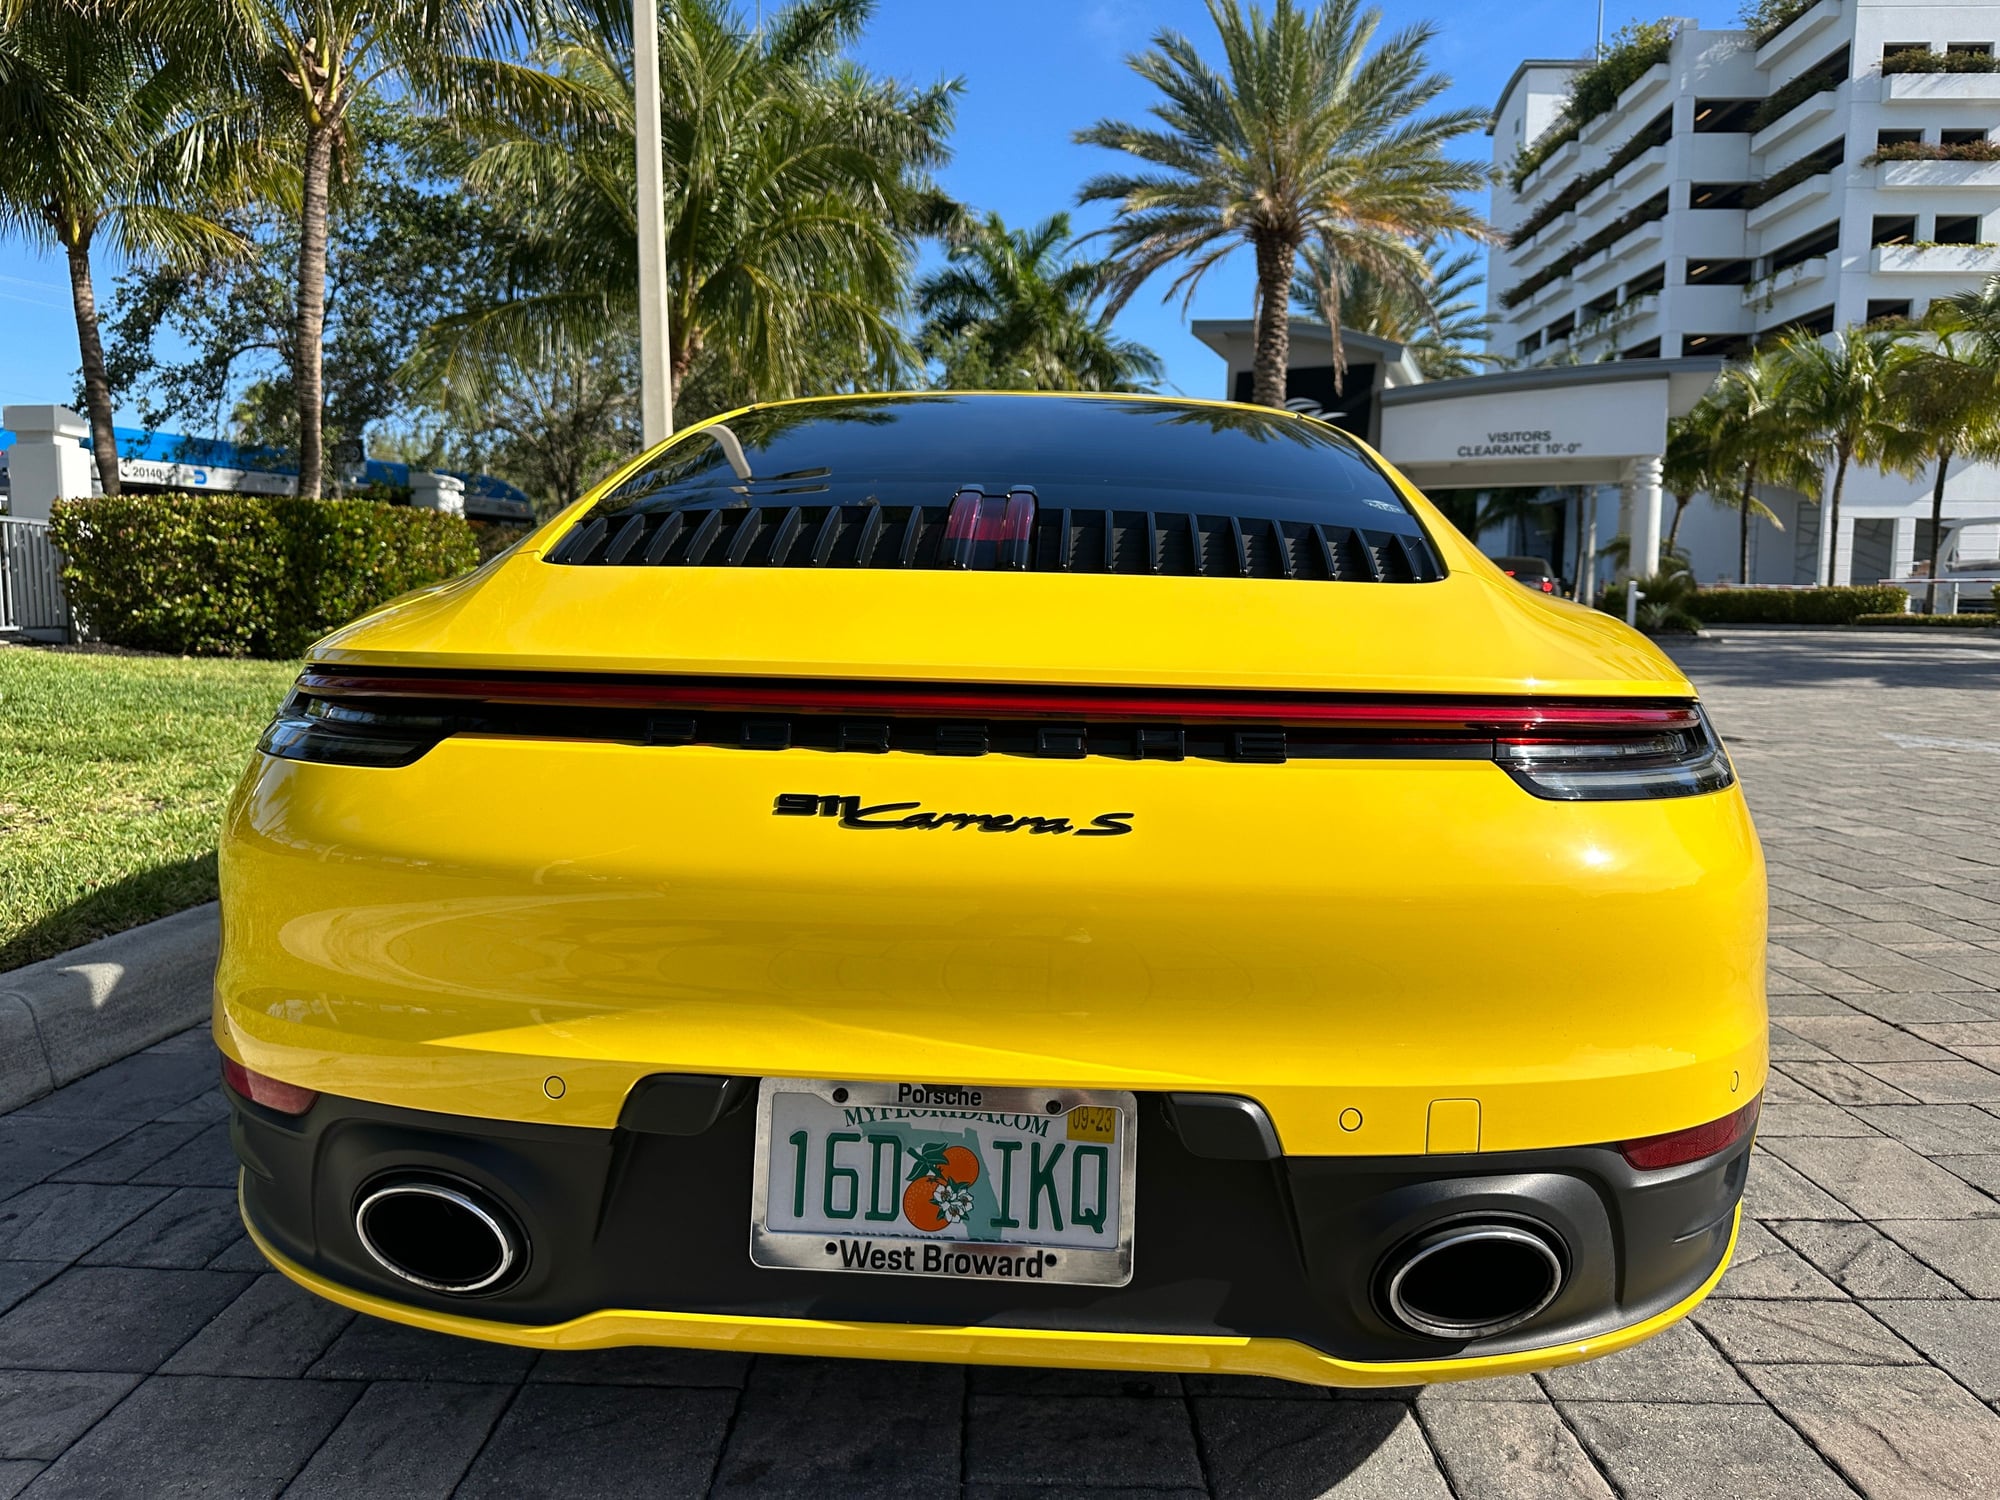 2020 Porsche 911 - FS: 2020 Porsche 992.1 Carrera S - Used - VIN WP0AB2A93LS225240 - 26,374 Miles - 6 cyl - 2WD - Automatic - Coupe - Yellow - Miami, FL 33160, United States